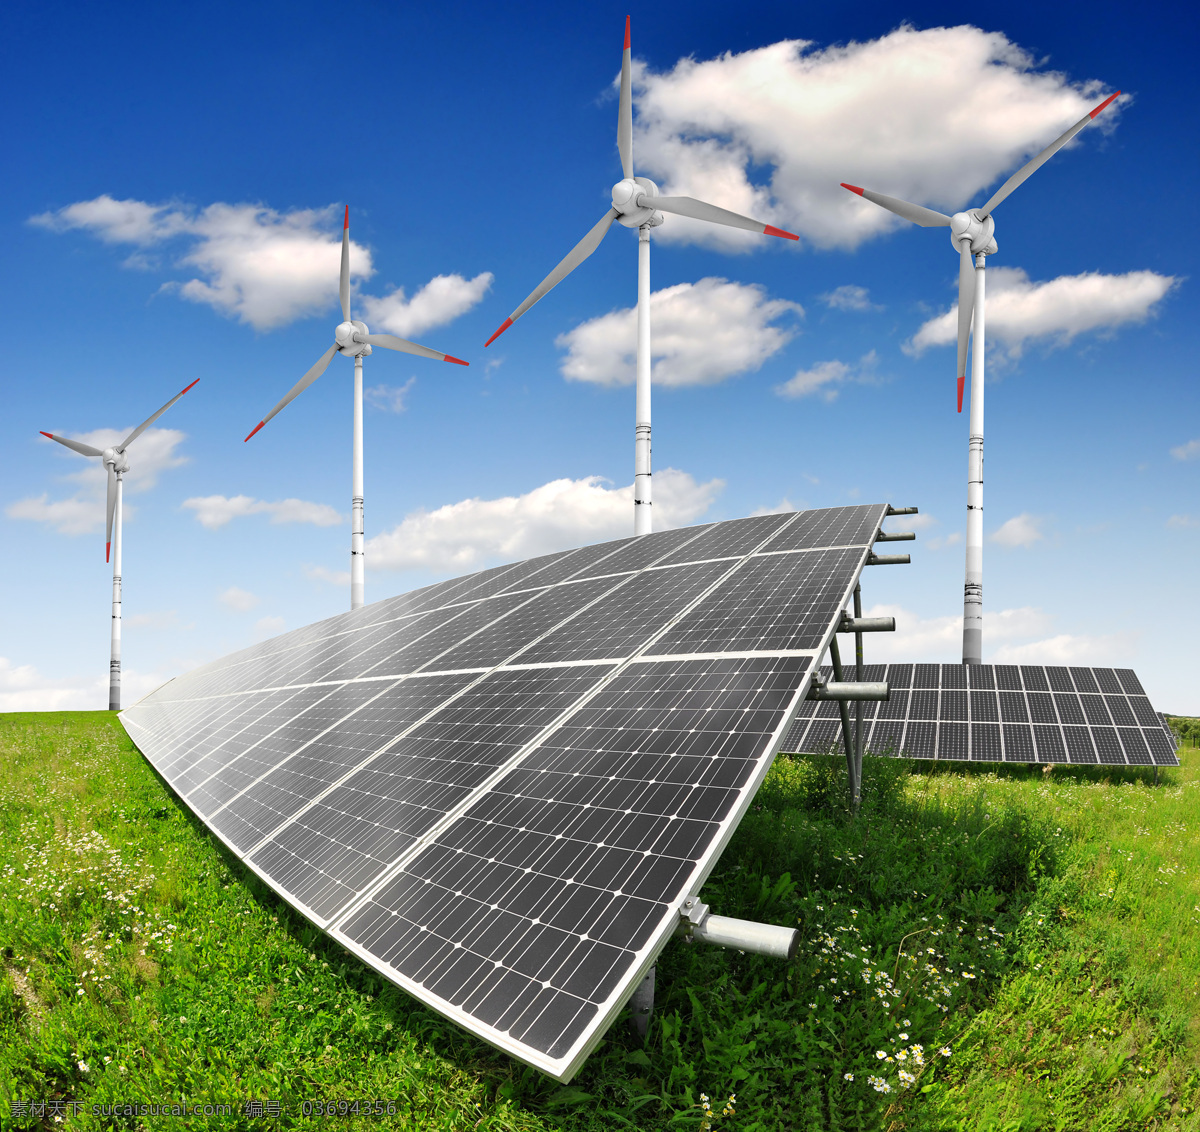 太阳能板 太阳能 蓝天白云 风车 光能源 绿色能源 绿色电力 环保 蓝天 白云 工业生产 现代科技 自可再生能源 现代工业 阳光 光线 再生能源 环保能源